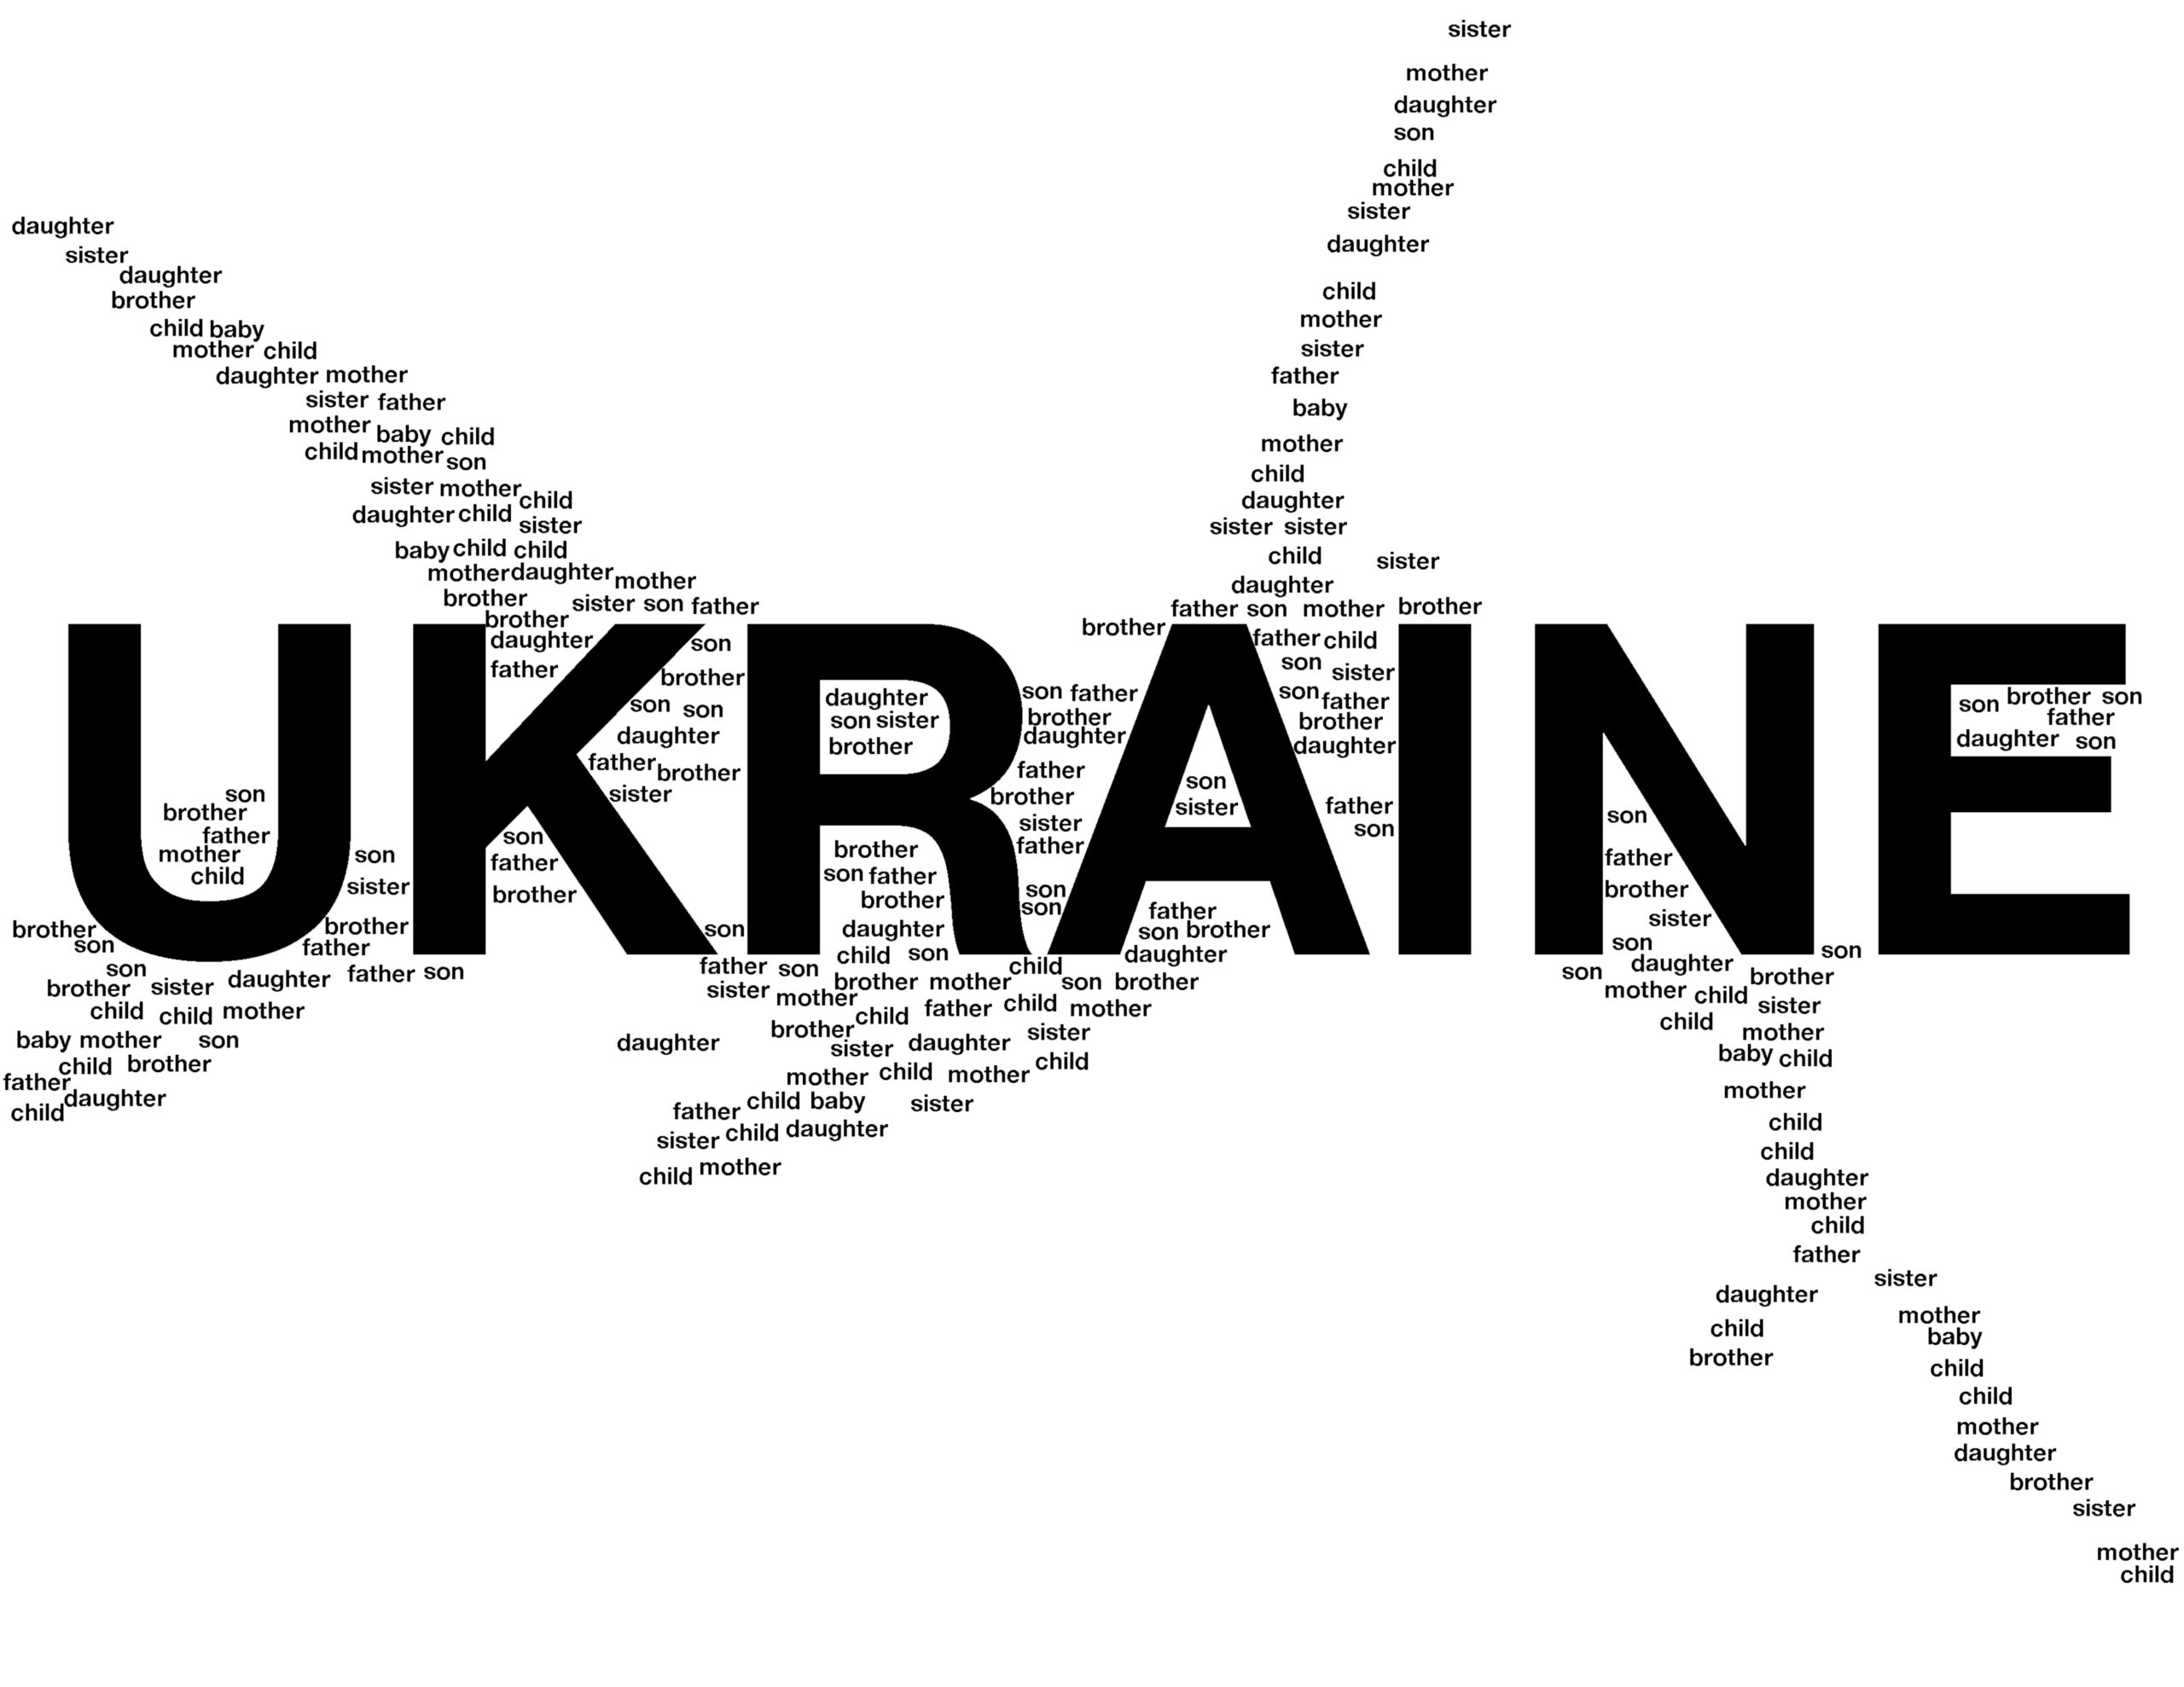 "UKRAINE" med stora bokstäver, och runtomkring står det ord så som "child", "father" och "sister" som upprepas flera gånger om.